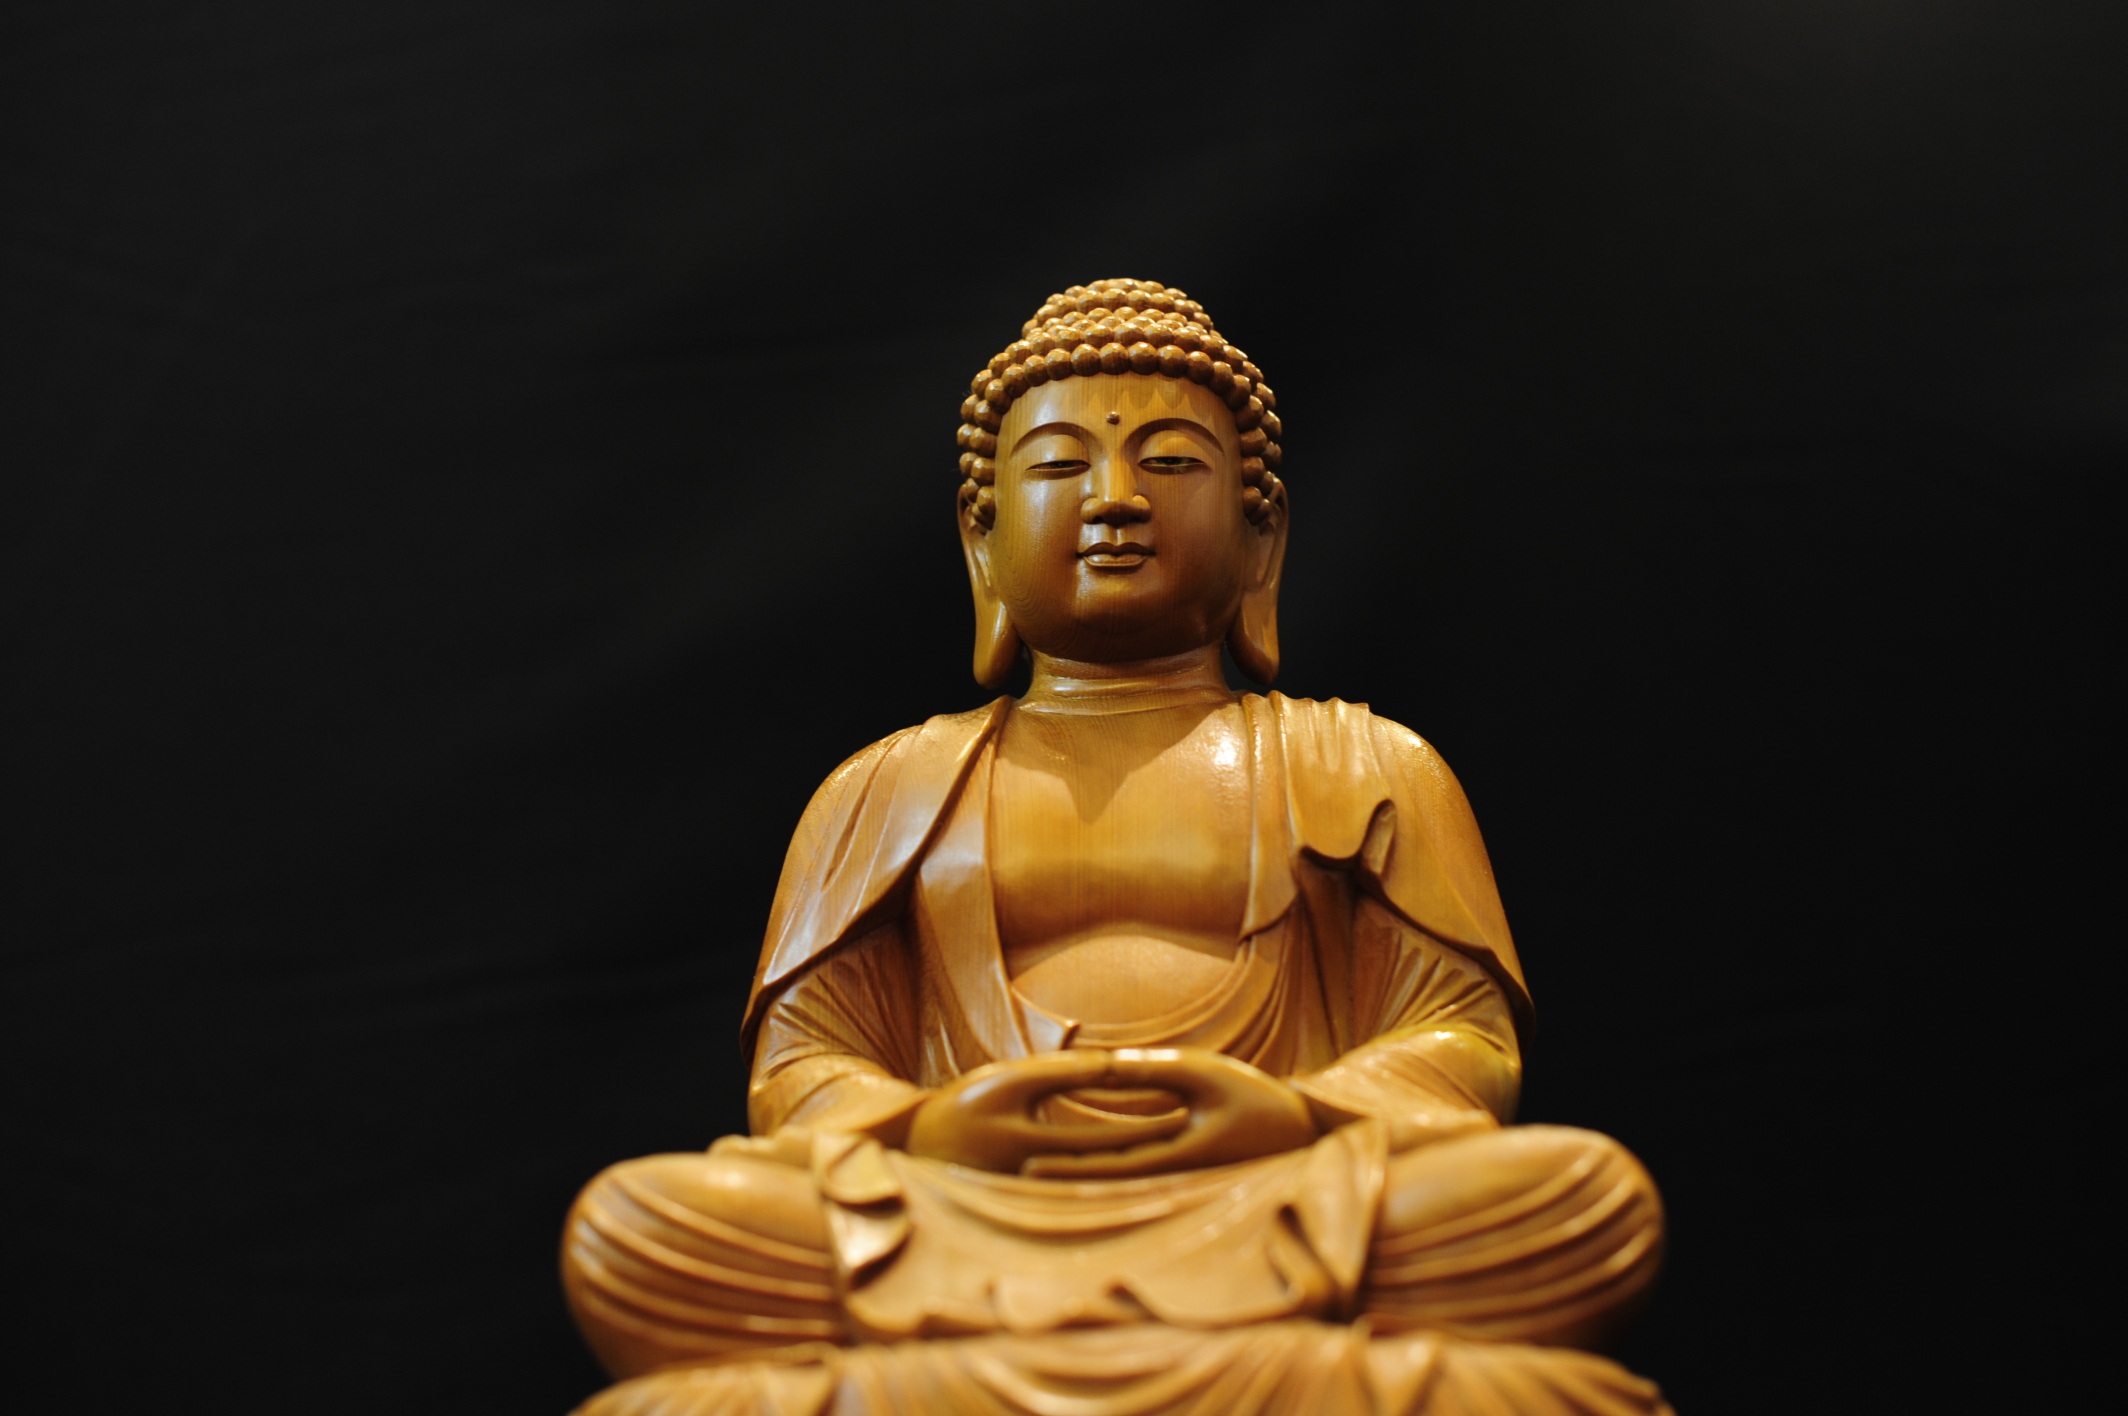  Buddha HQ Background Images